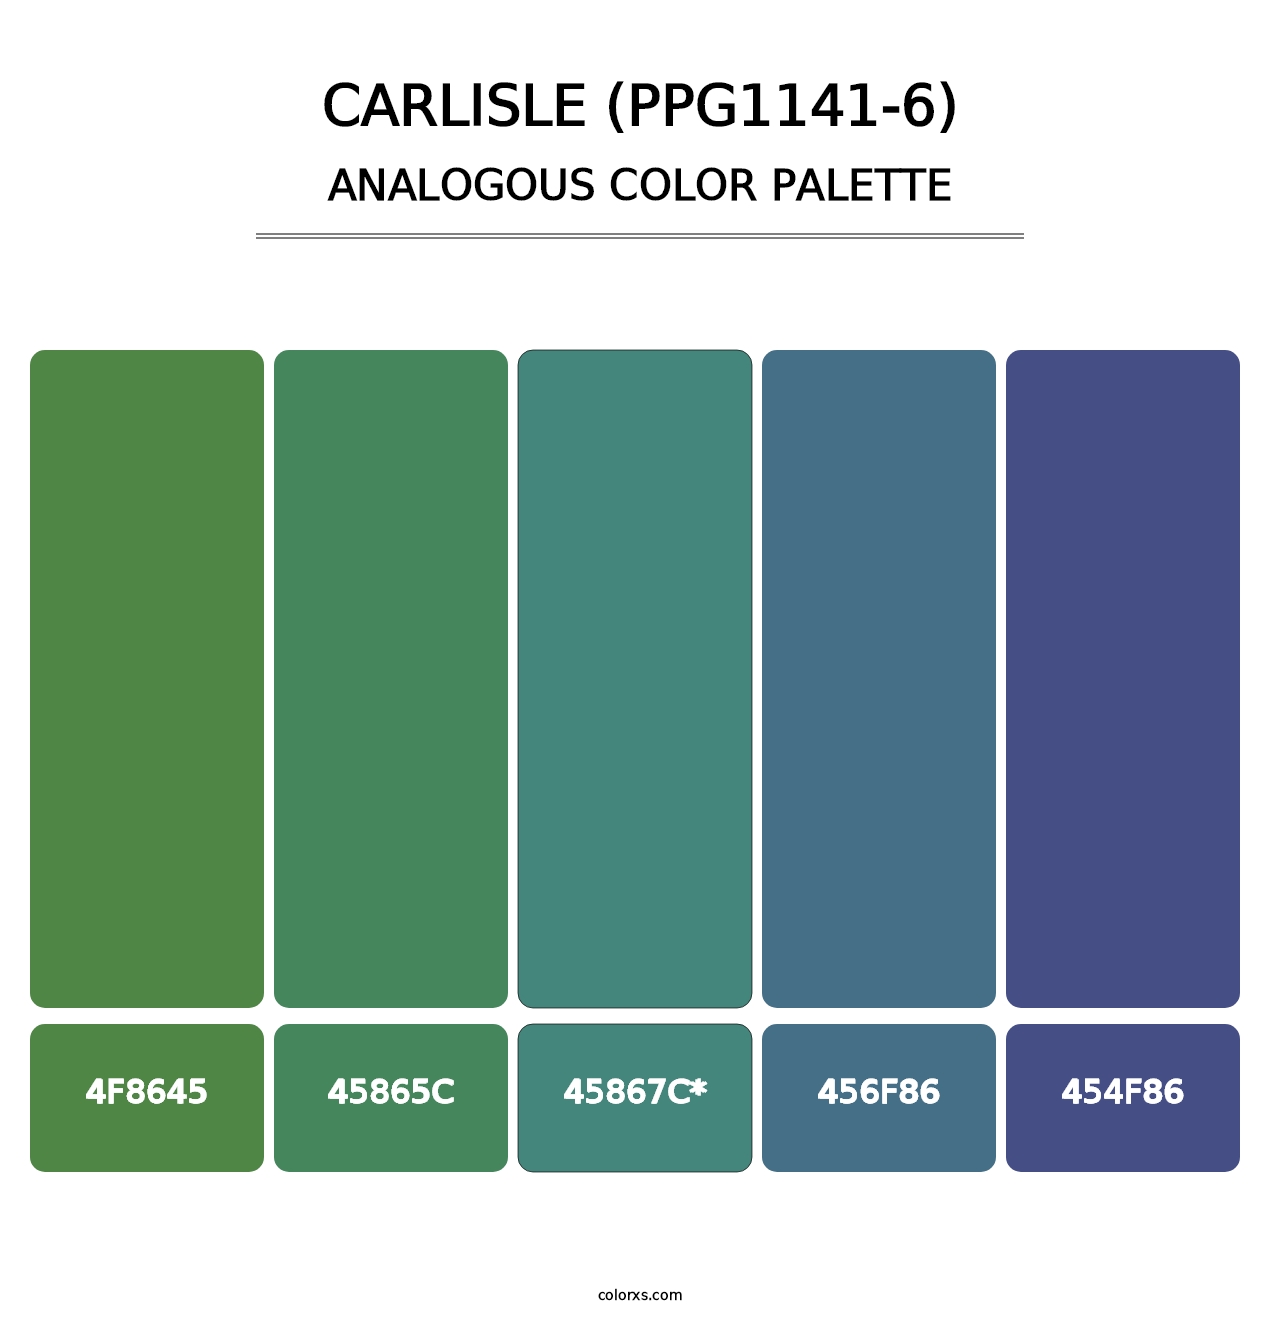 Carlisle (PPG1141-6) - Analogous Color Palette